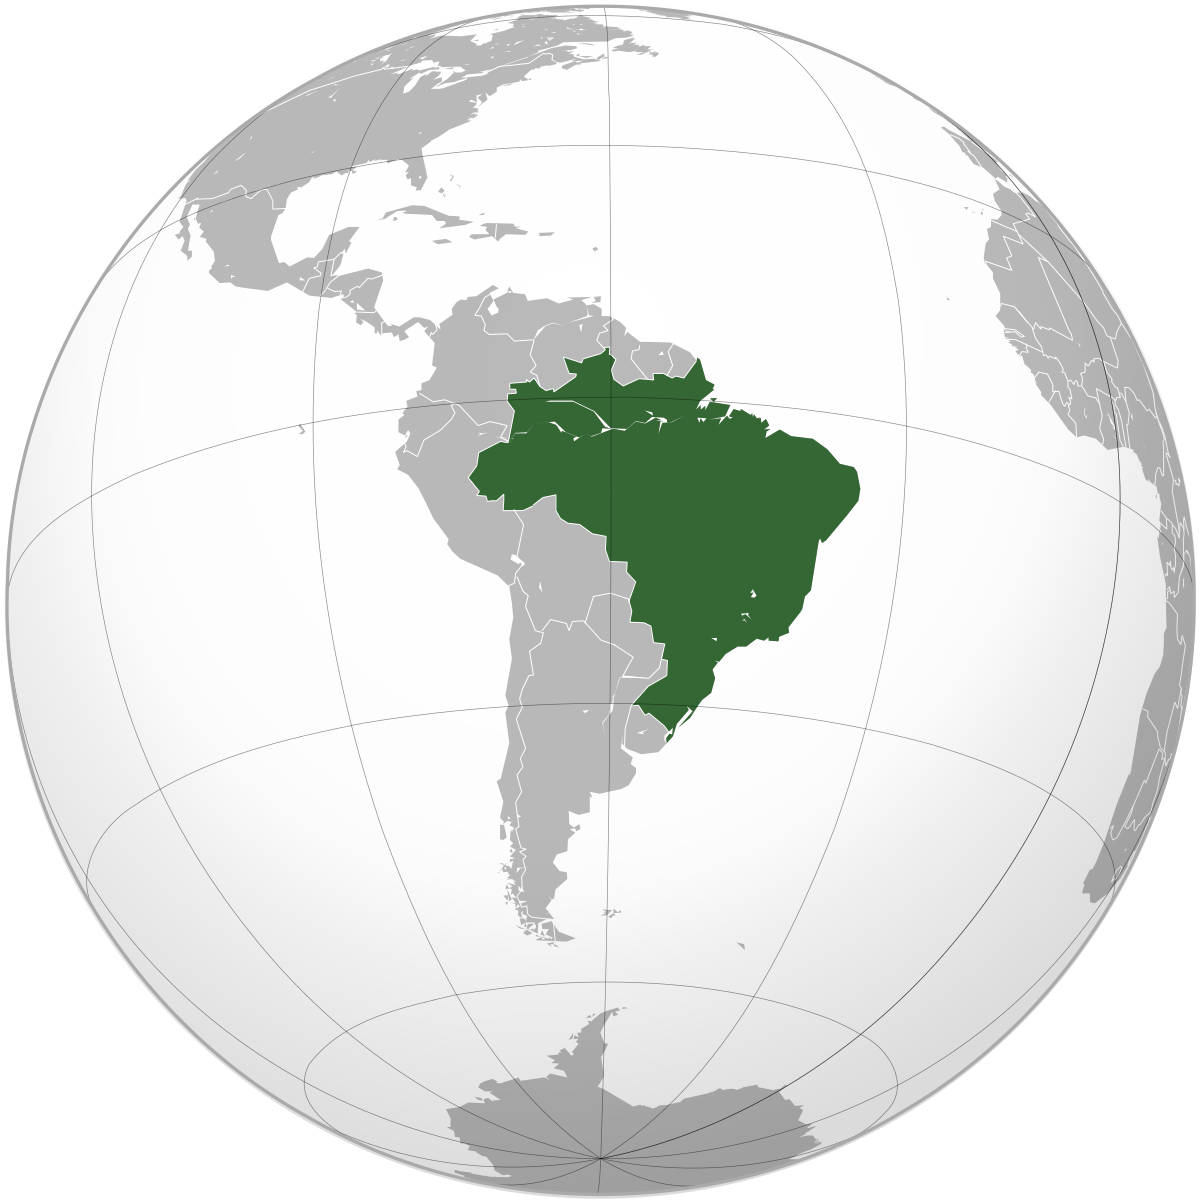 Adesão da Bolívia ao Mercosul é aprovada na Comissão de Relações Exteriores